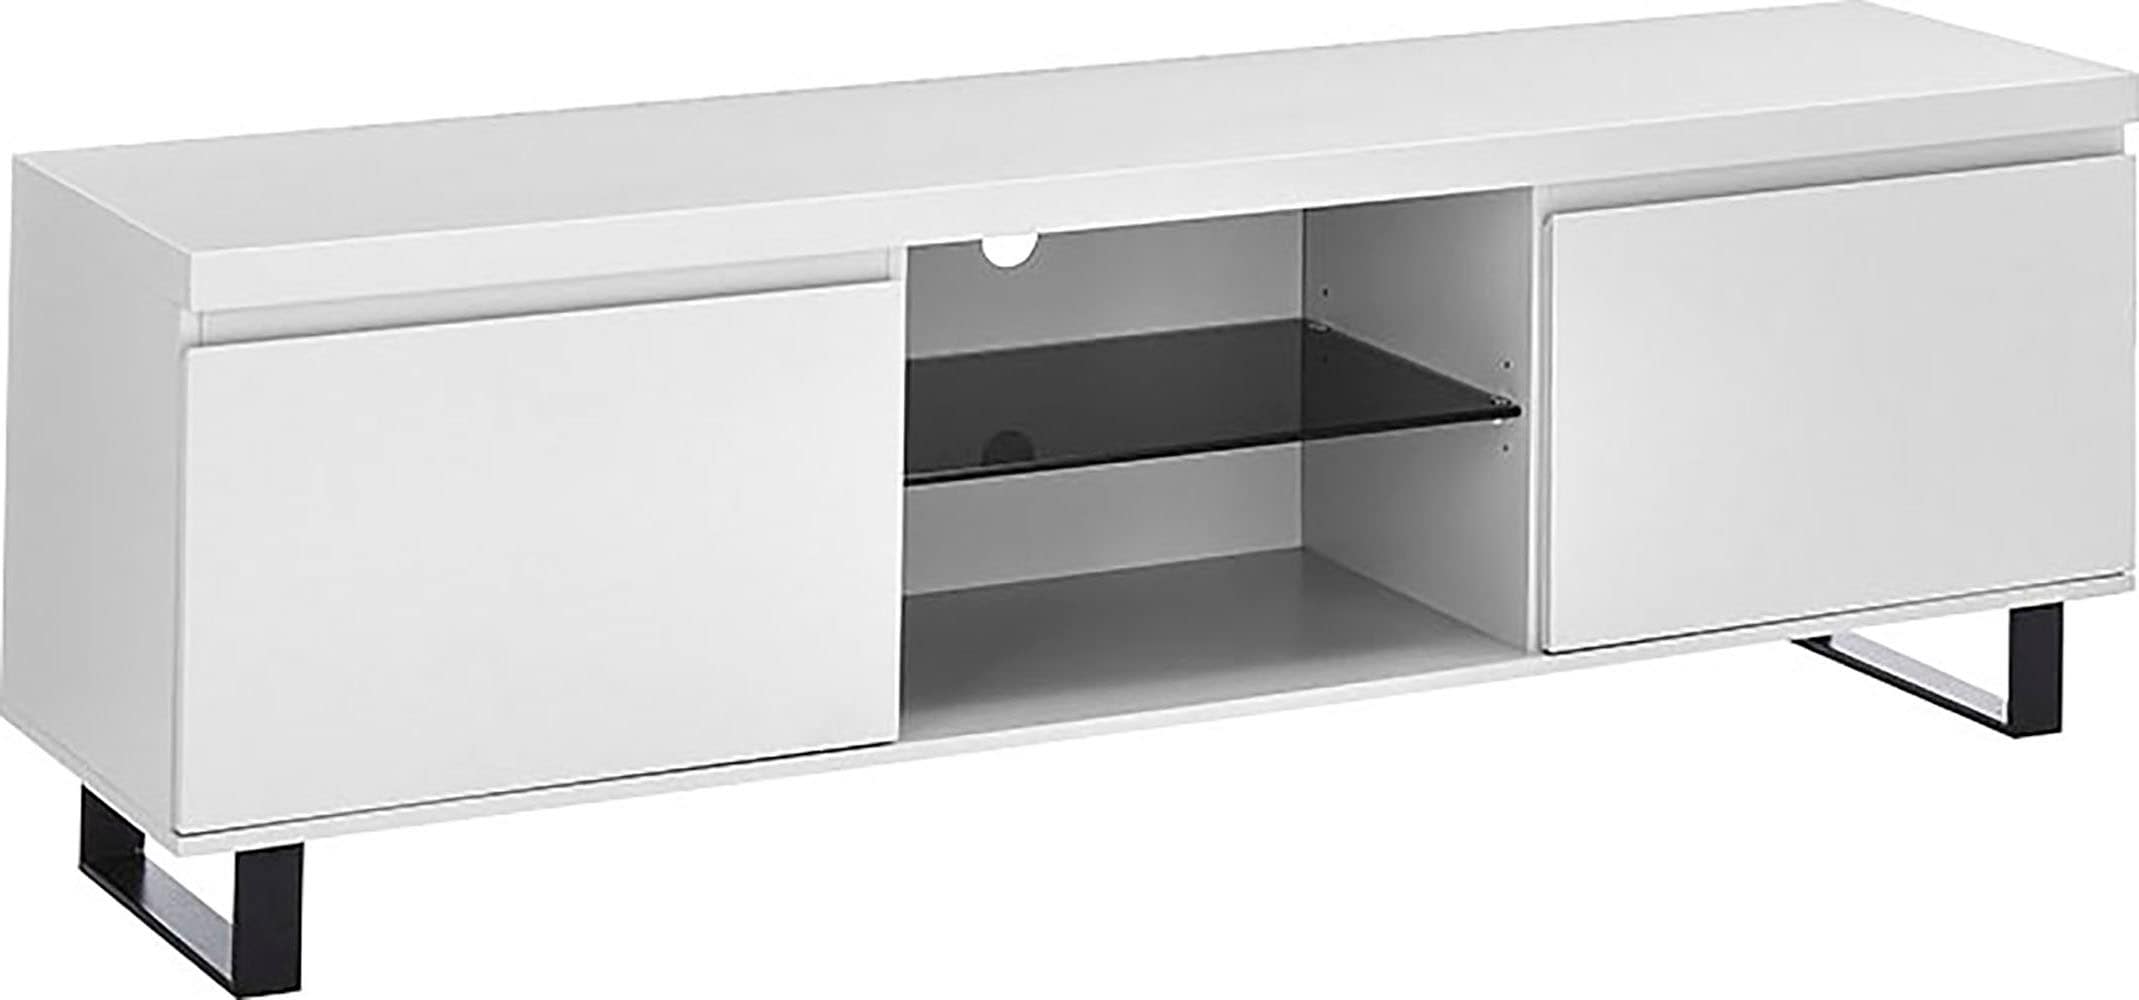 MCA furniture Lowboard »AUSTIN Lowboard«, Türen mit Dämpfung